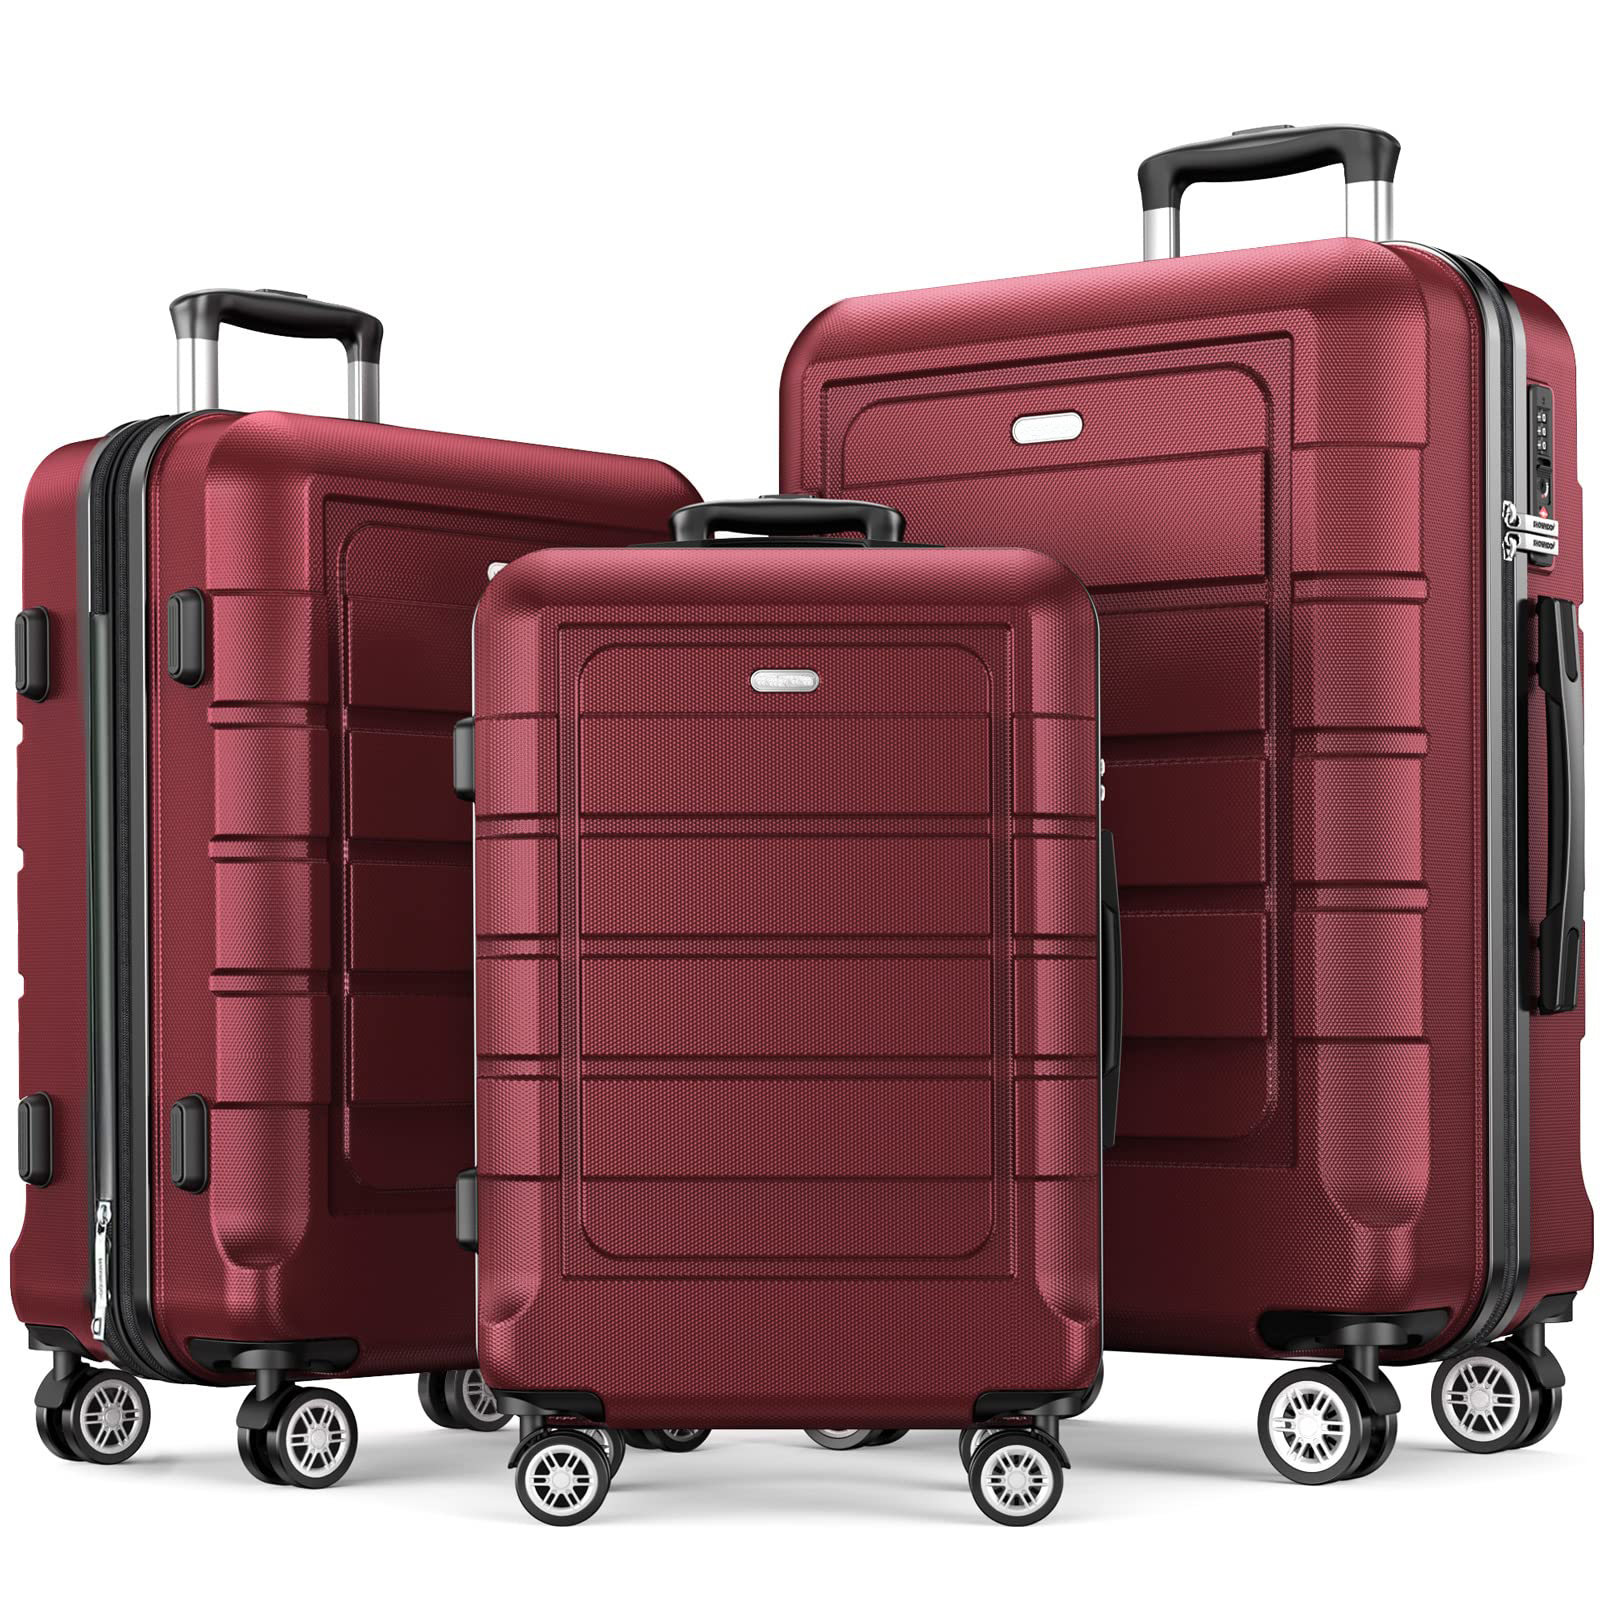 Der rote ABS-Koffer ist langlebig und verfügt über einen Rollkoffer mit Rollen